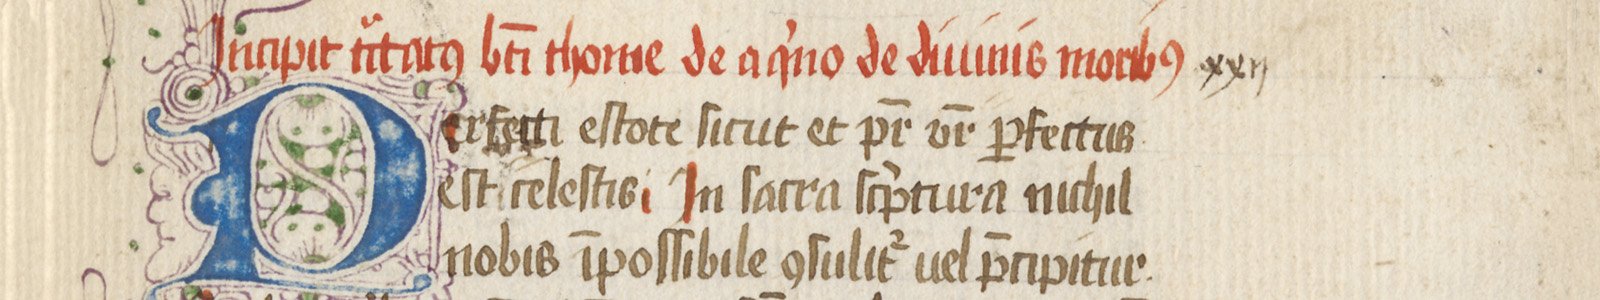 Uitsnede uit handschrift 297 uit de Bijzondere Collecties van de Universiteitsbibliotheek Utrecht